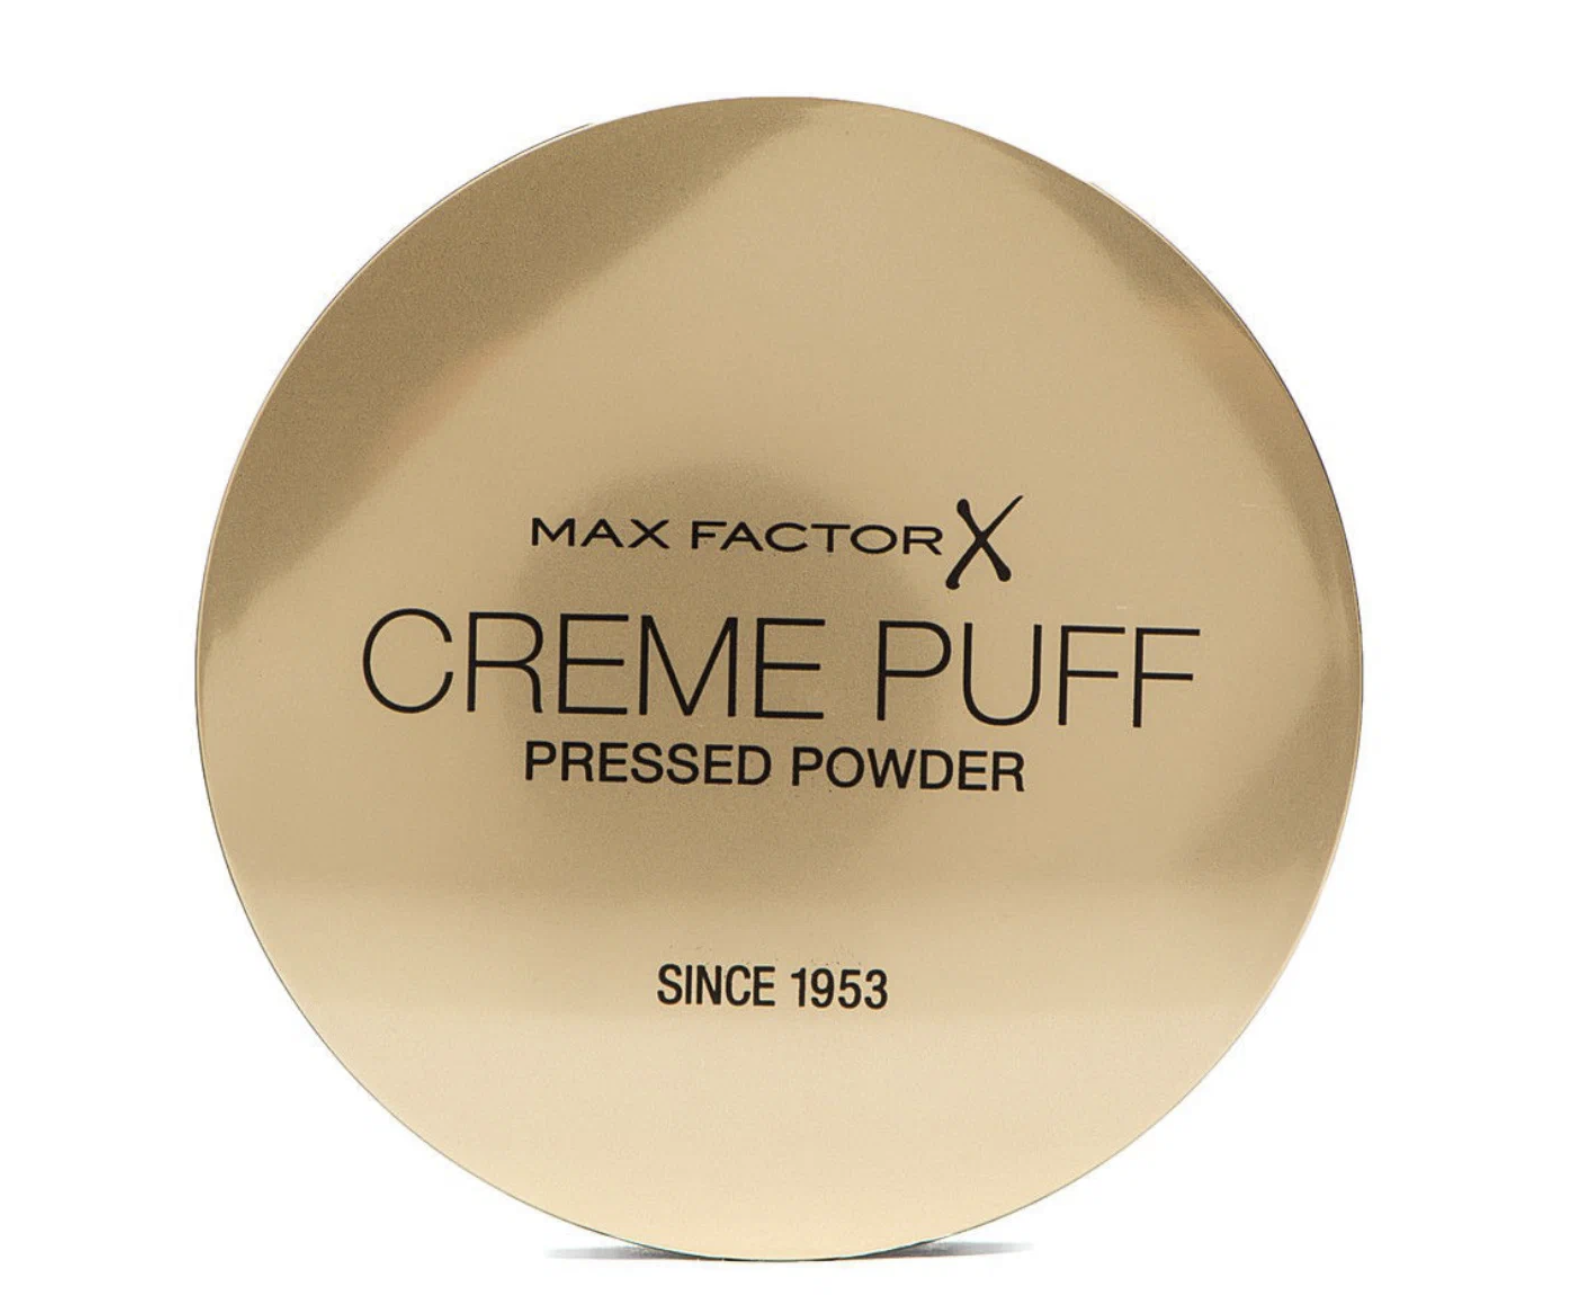 Крем-пудра для лица Max Factor Creme Puff Pressed Powder 40 Creamy Ivory 1 крем пудра для лица top cover creamy powder 2331r27 003n n 3 n 3 1 шт